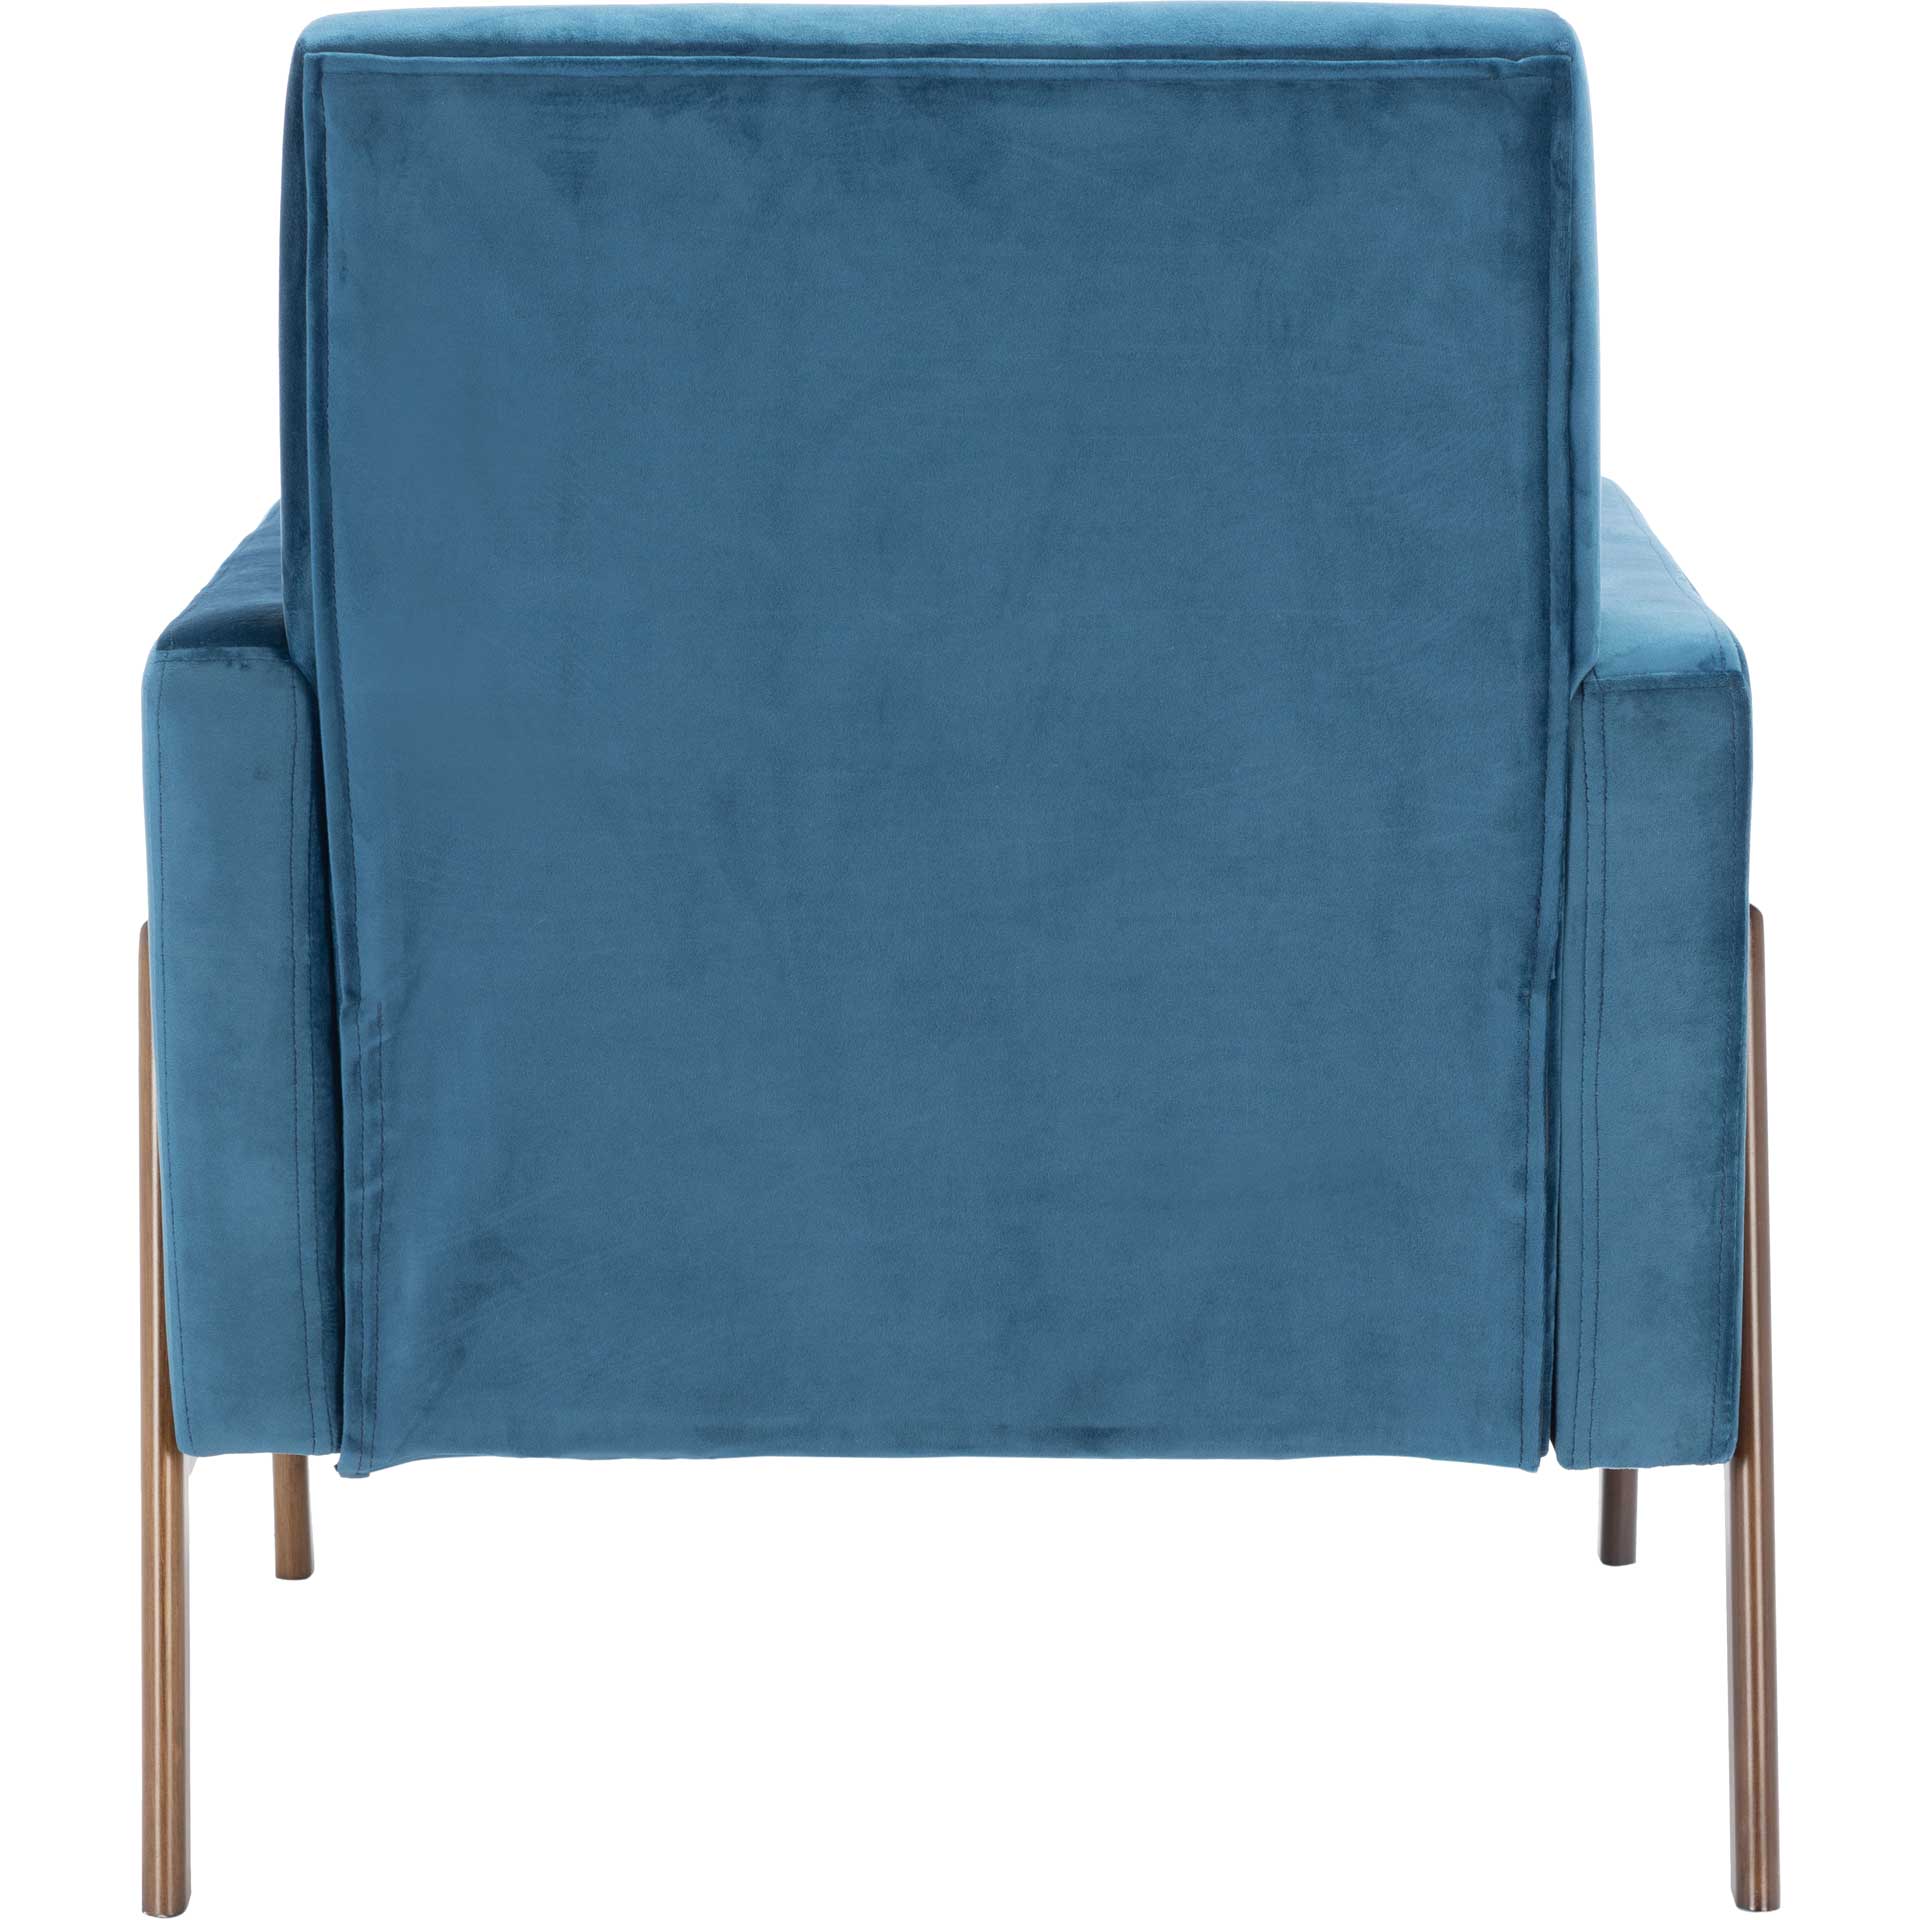 Rocha Sofa Accent Chair Blue/Antique Coffee